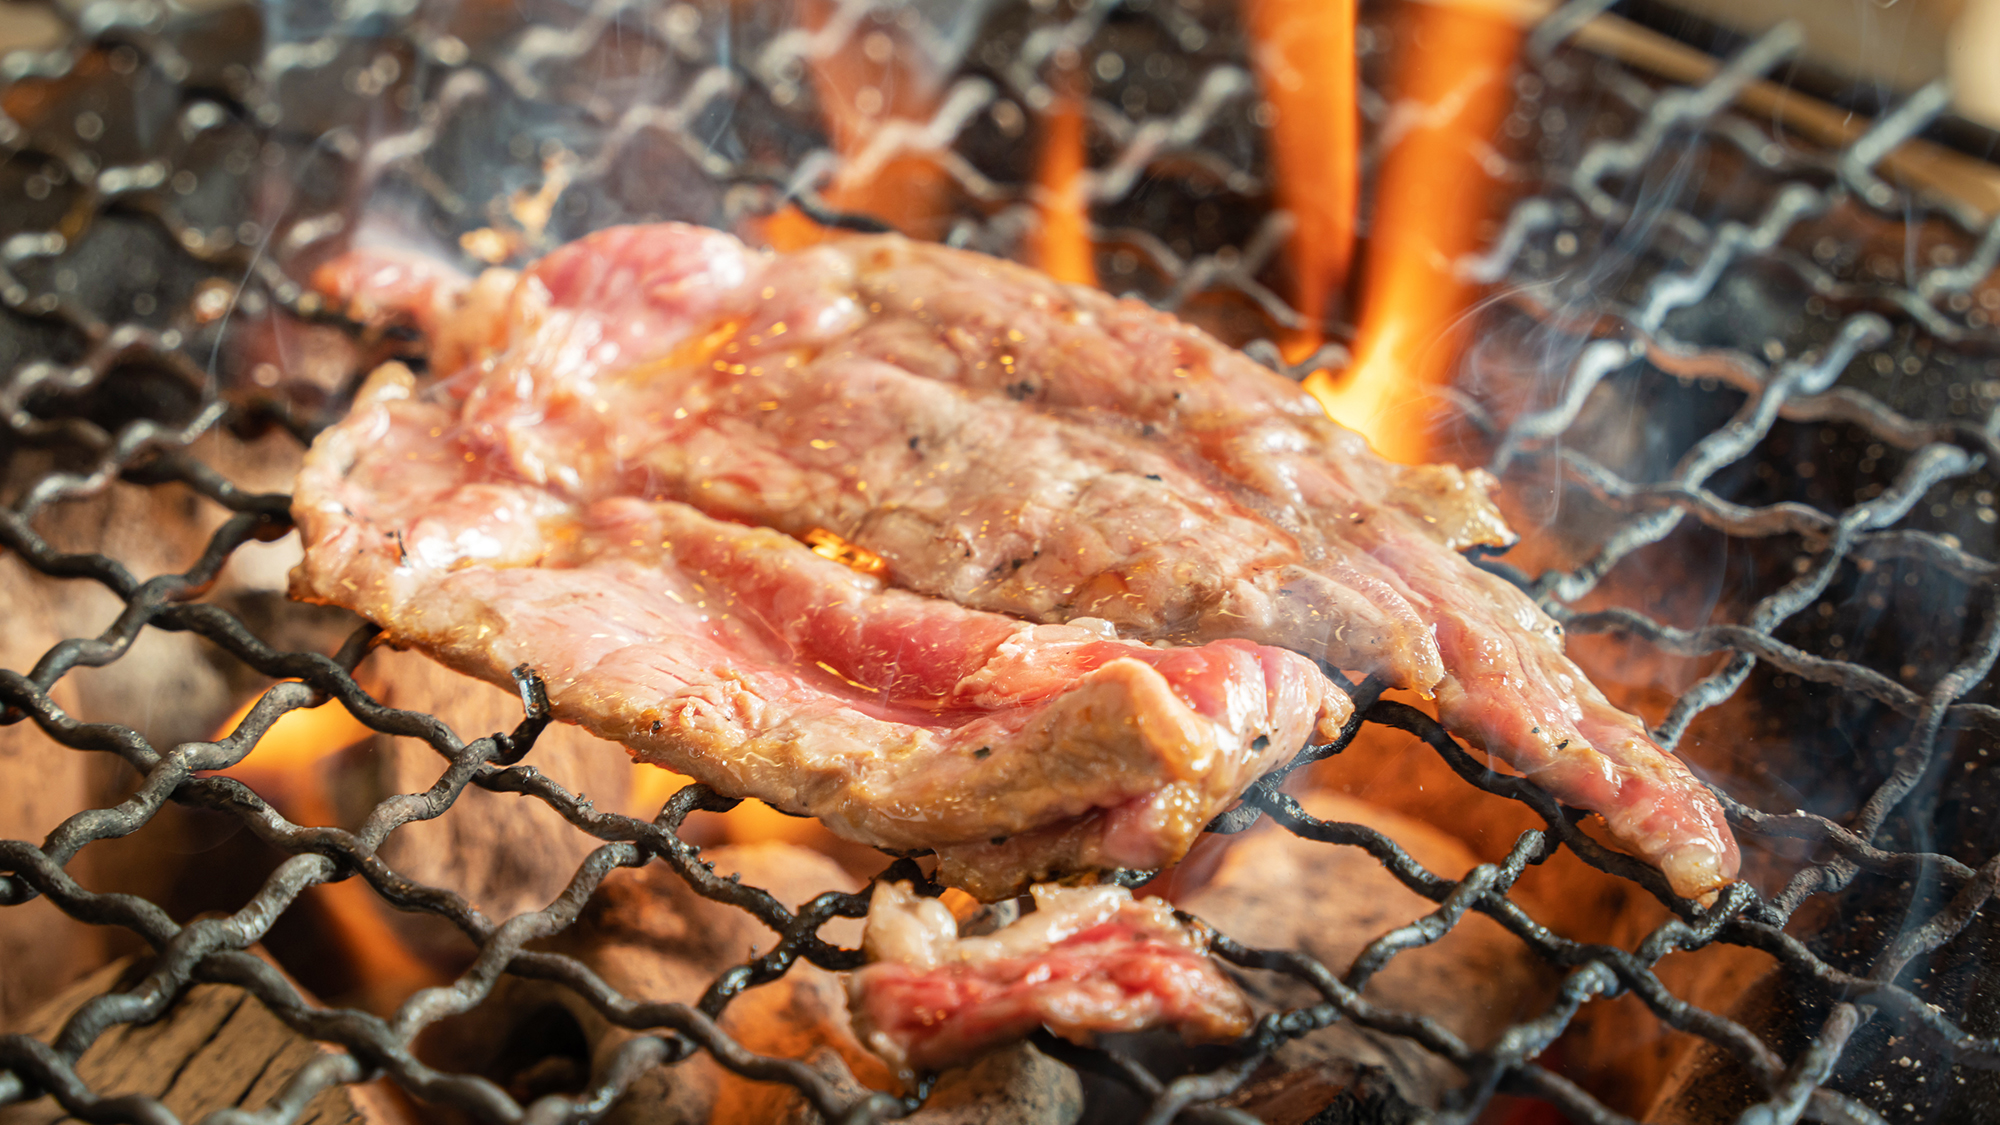 【夕食ビュッフェ‐メニュー例】旨味が逃げないよう、炭火でじっくりと焼き上げる「牛ステーキ」